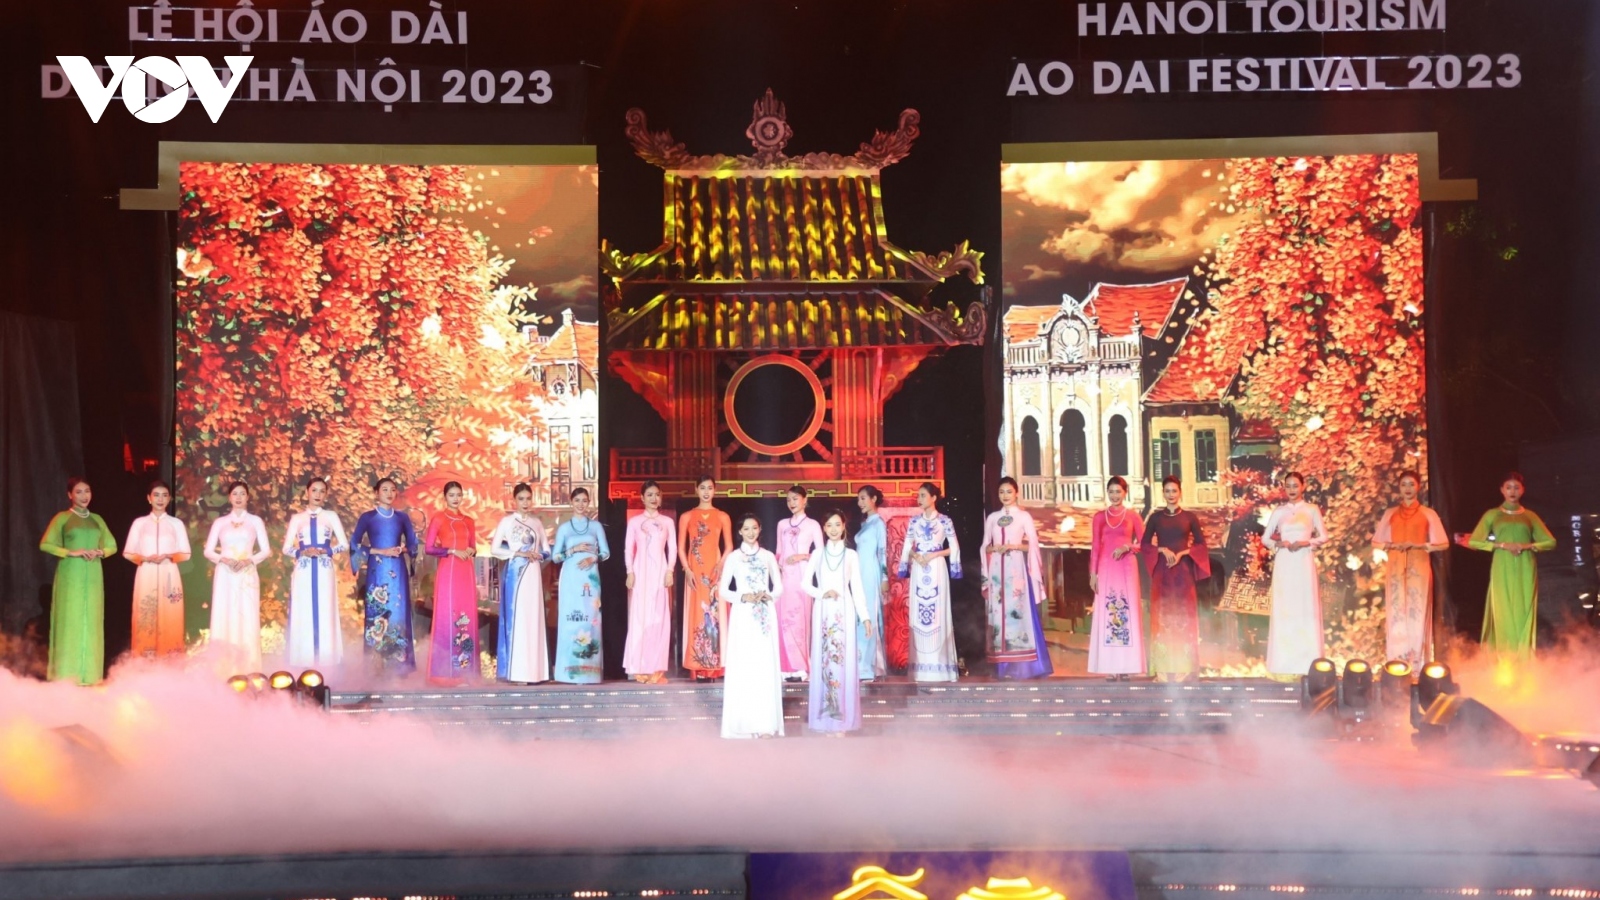 Lễ hội Áo dài Du lịch Hà Nội 2023: Tôn vinh nét đẹp văn hóa Việt Nam